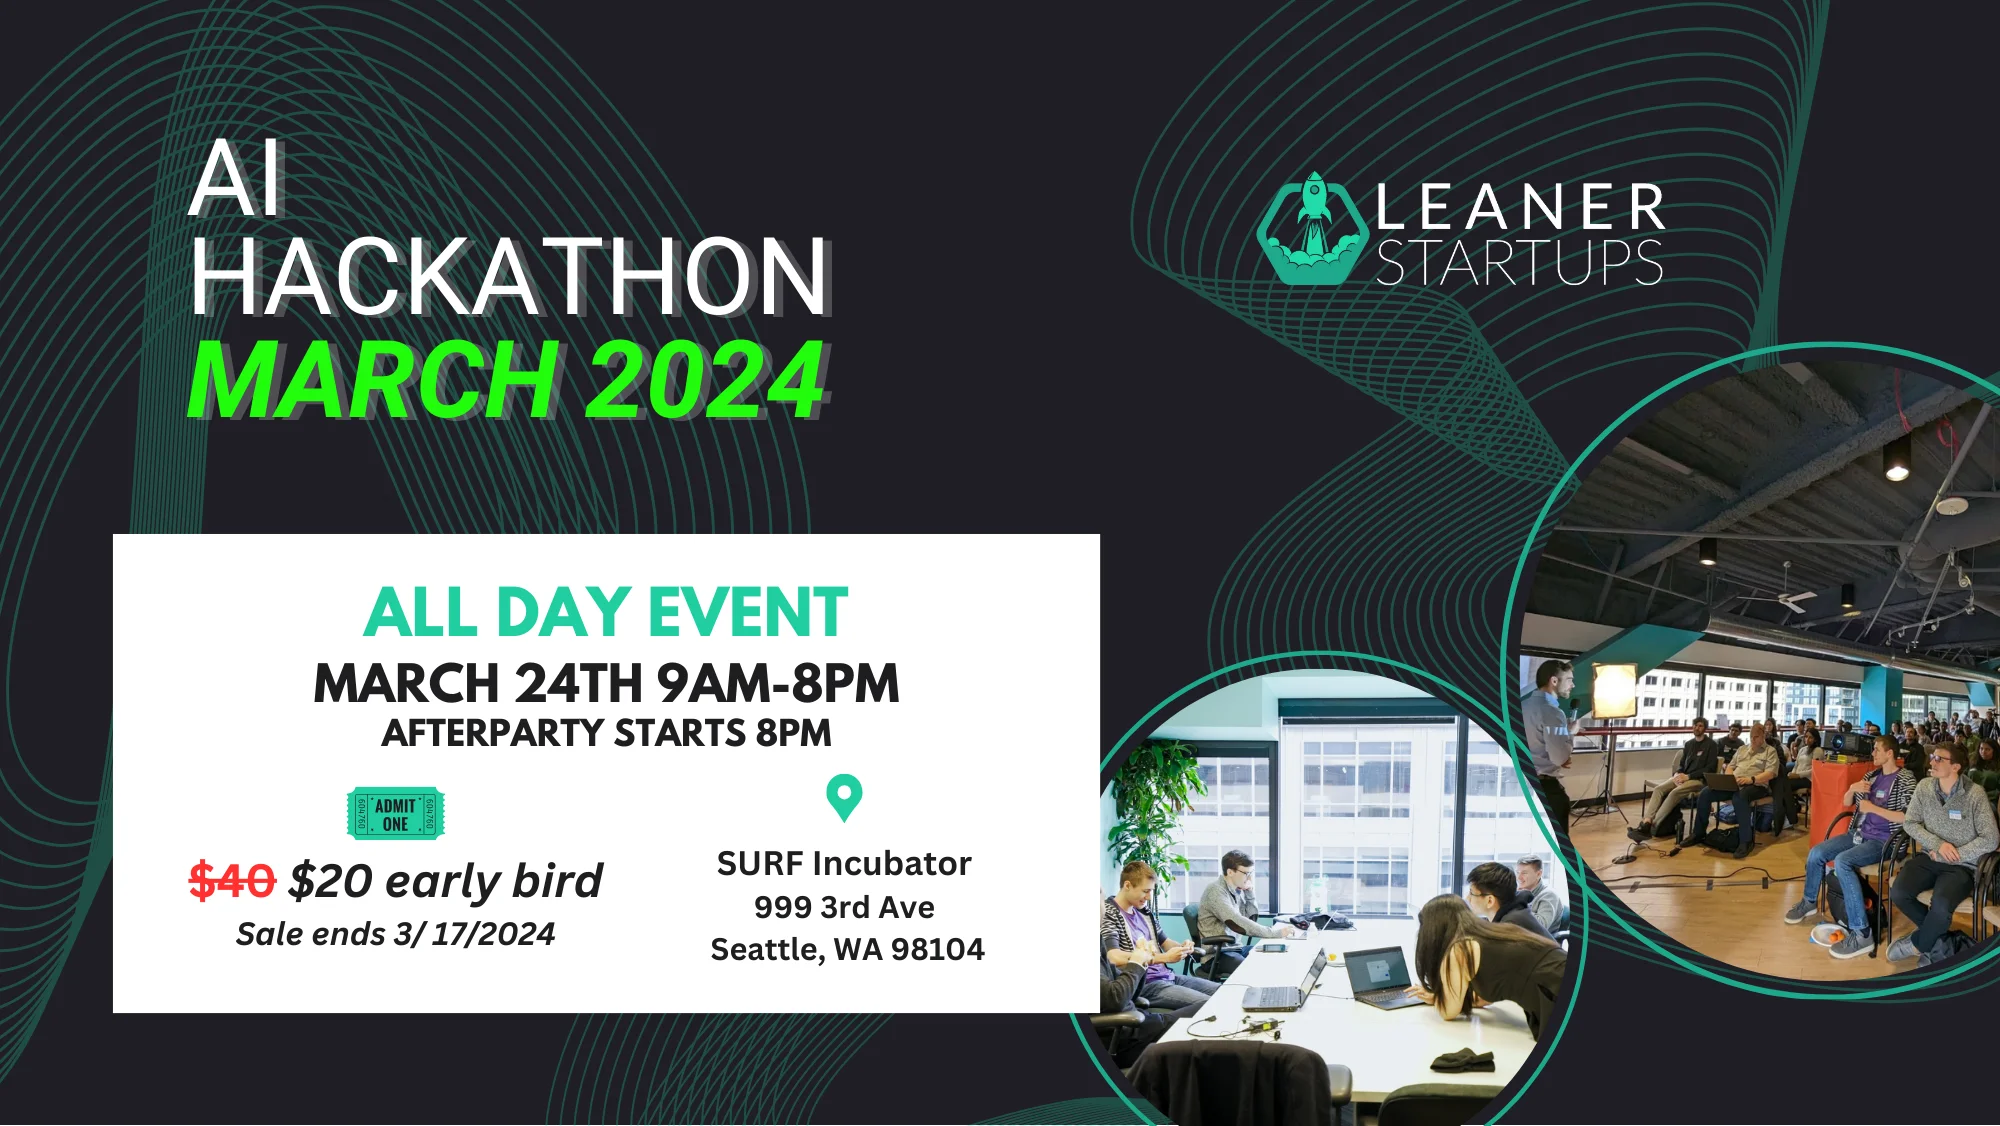 AI Hackathon March 2024 Event Image